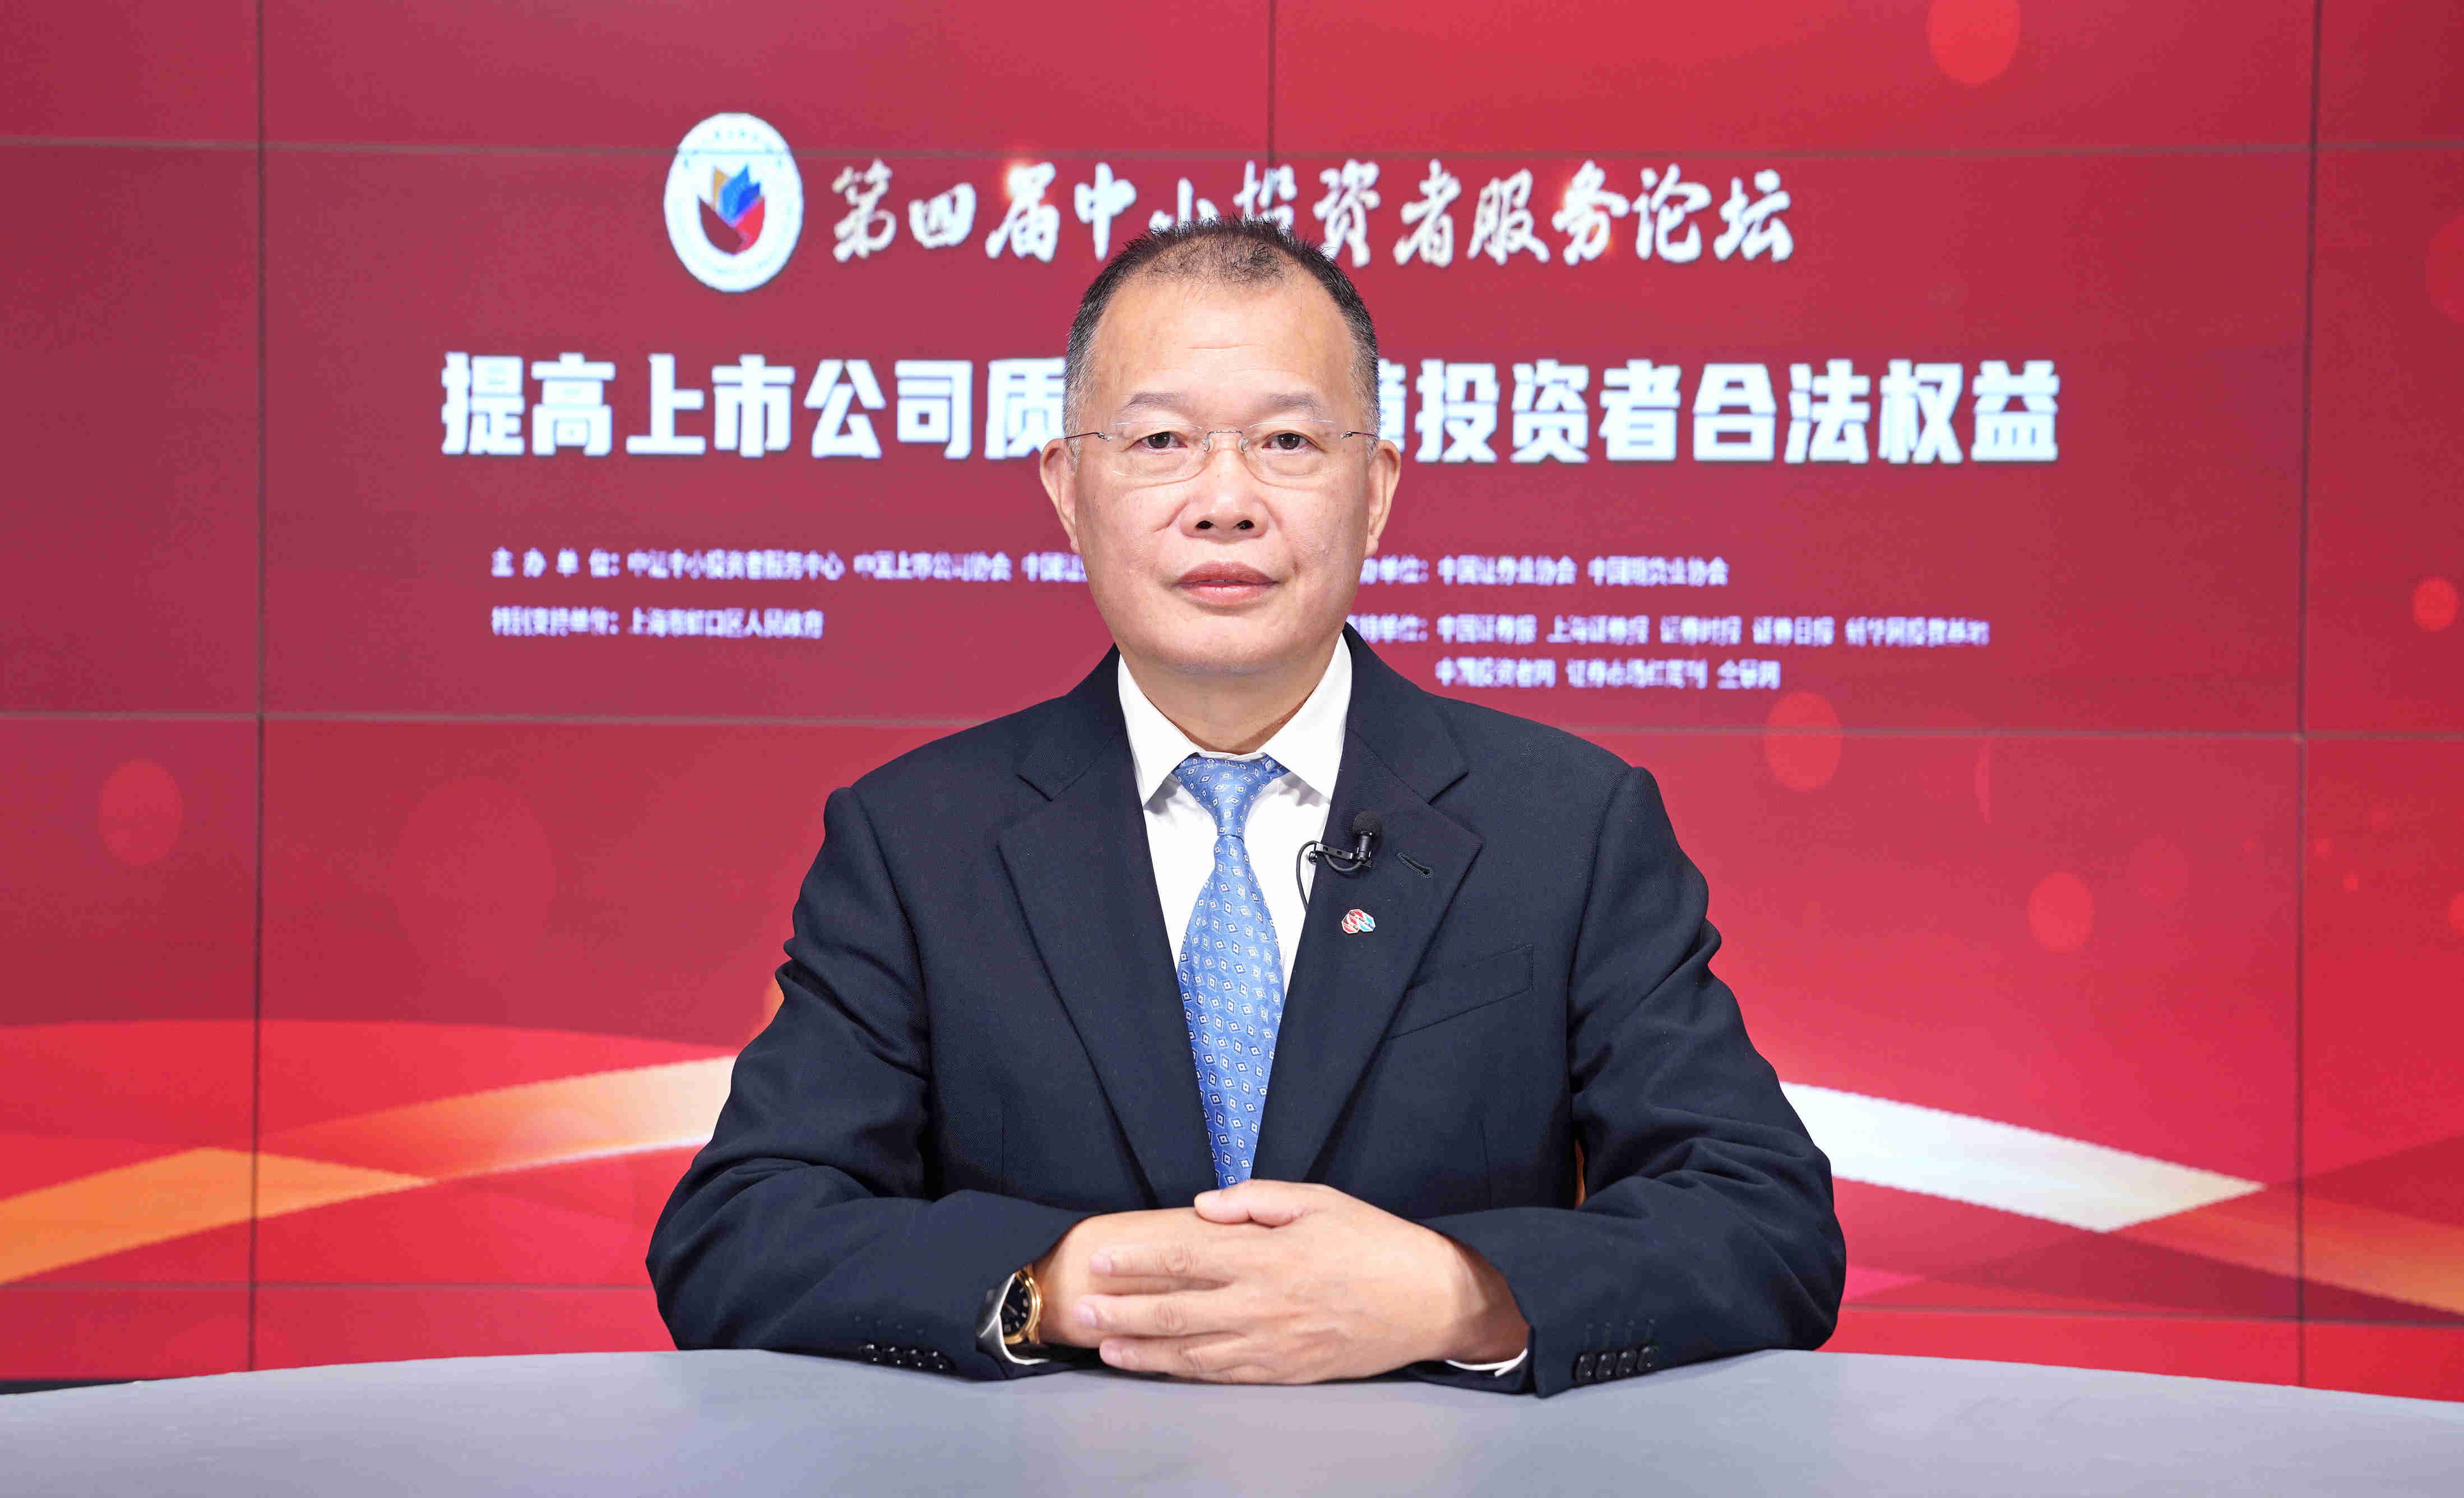 中证中小投资者服务中心有限责任公司副总经理黄勇在第四届中小投资者服务论坛上的发言